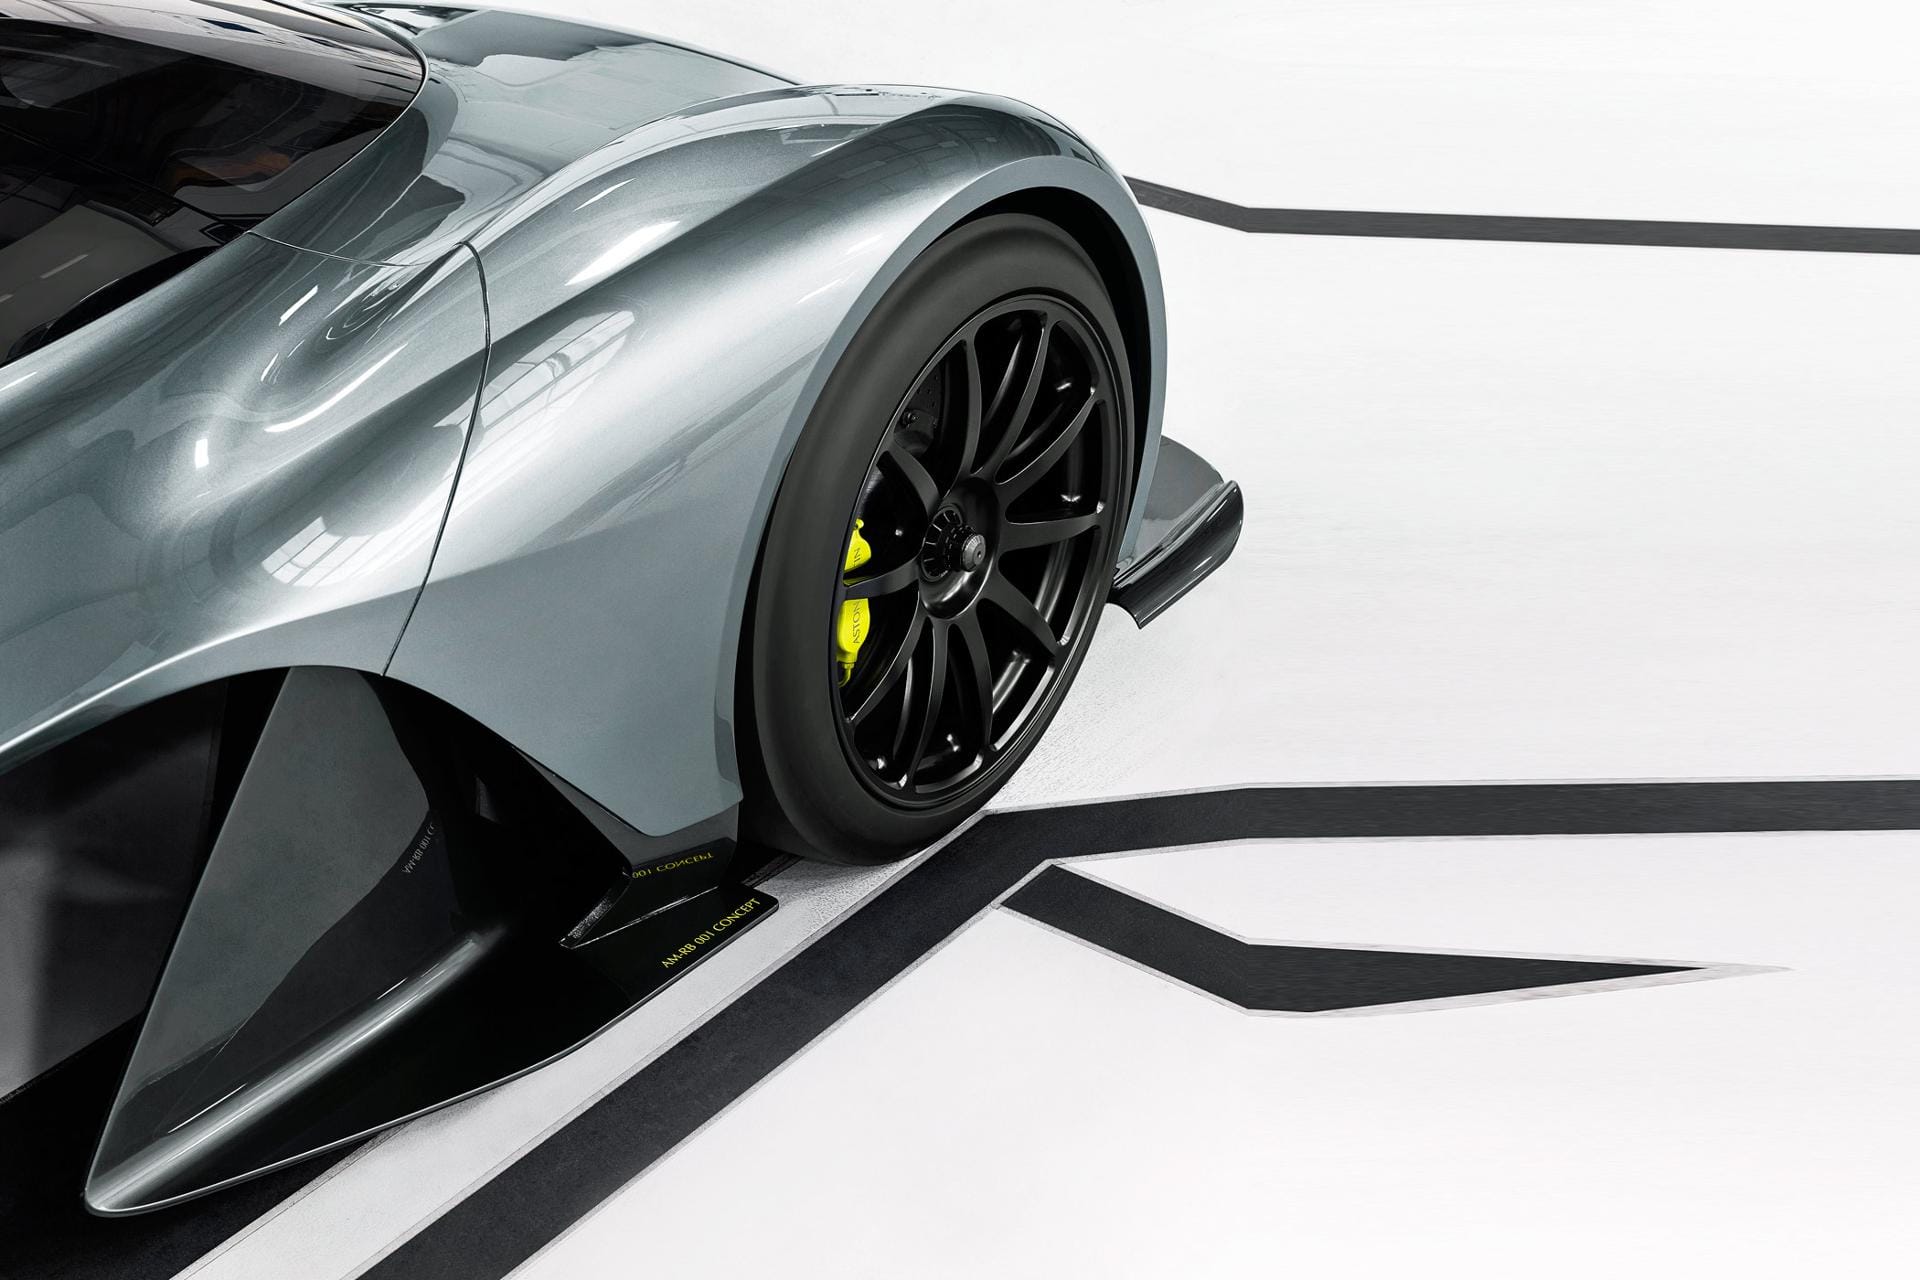 Die Aerodynamik treibt Blüten: Hinter dem Vorderrad erinnert der Straßenrenner an ein Formel-1-Auto.